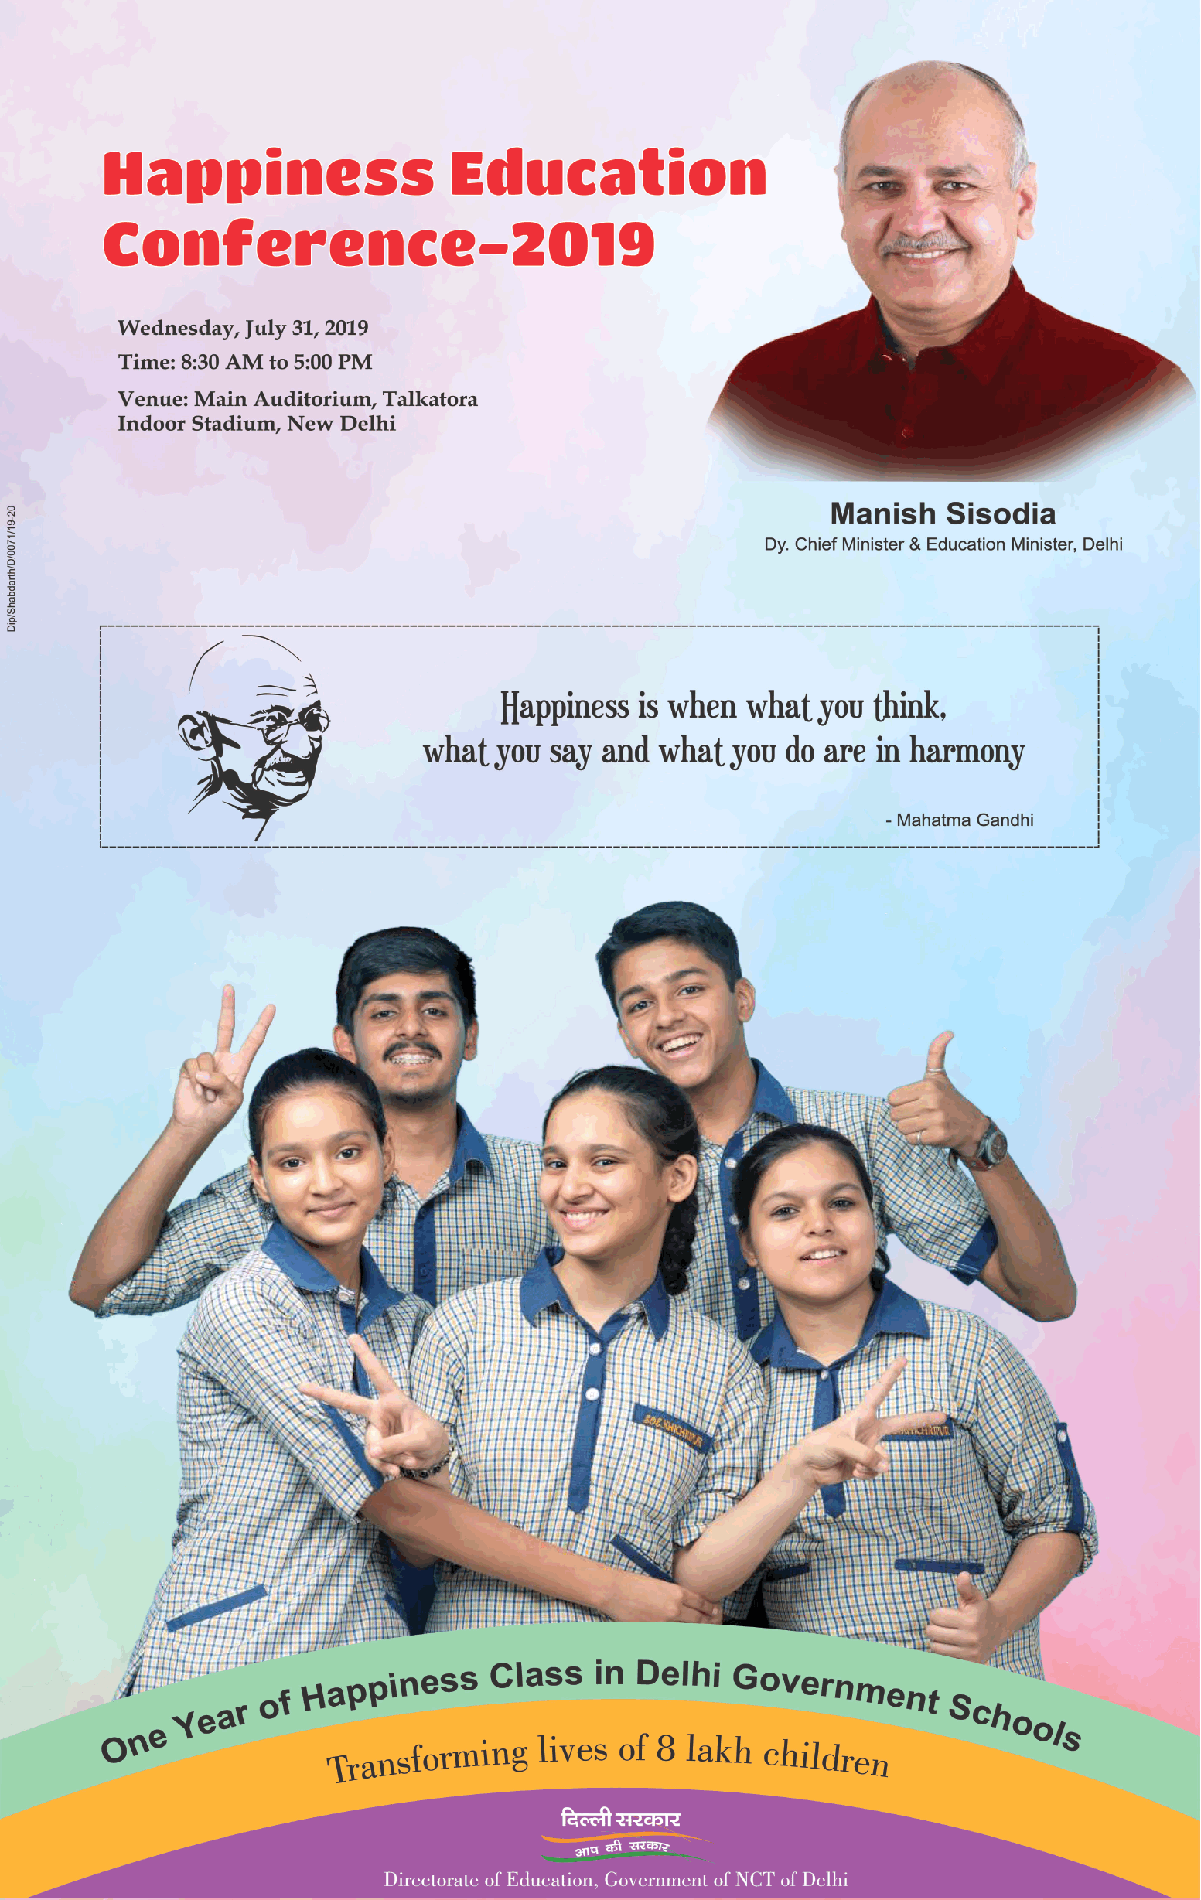 delhi-sarkar-happiness-education-conference-2019-ad-times-of-india-delhi-31-07-2019.png